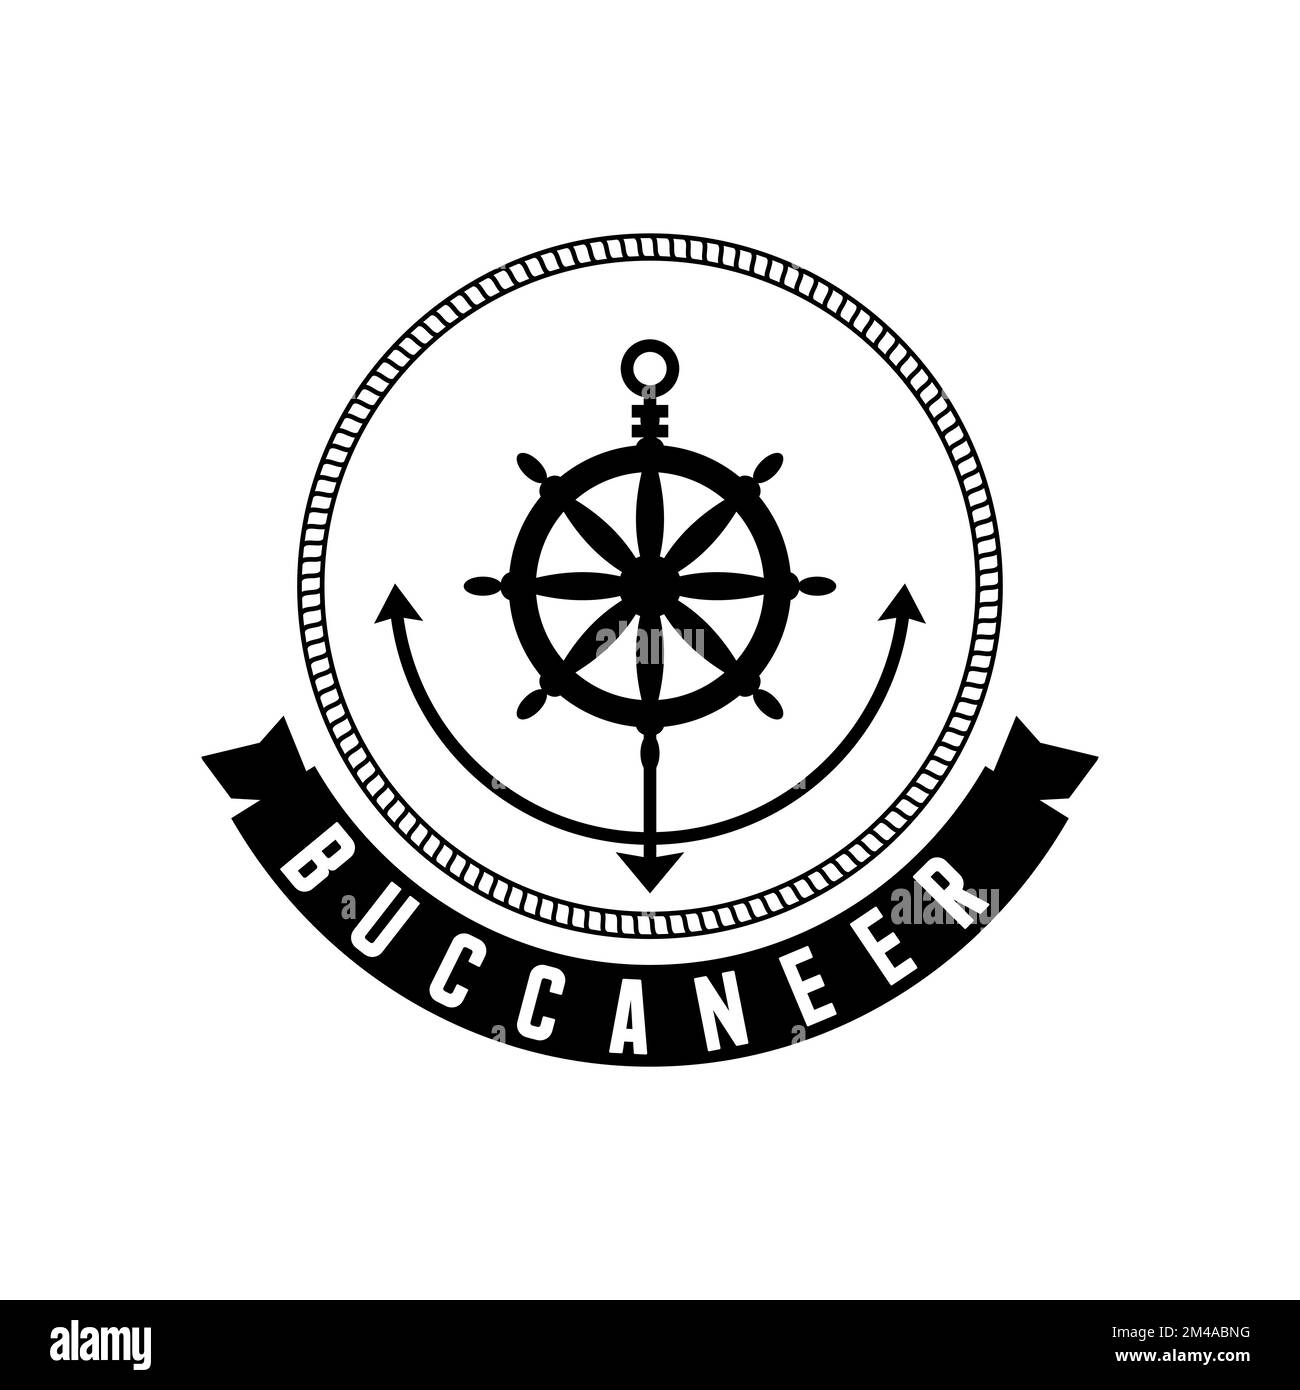 Klassischer Bootsanker, Seil und Ruder Bild grafisches Symbol Logo Design abstraktes Konzept Vektormaterial. Symbol, das dem Seemann zugeordnet ist. Stock Vektor